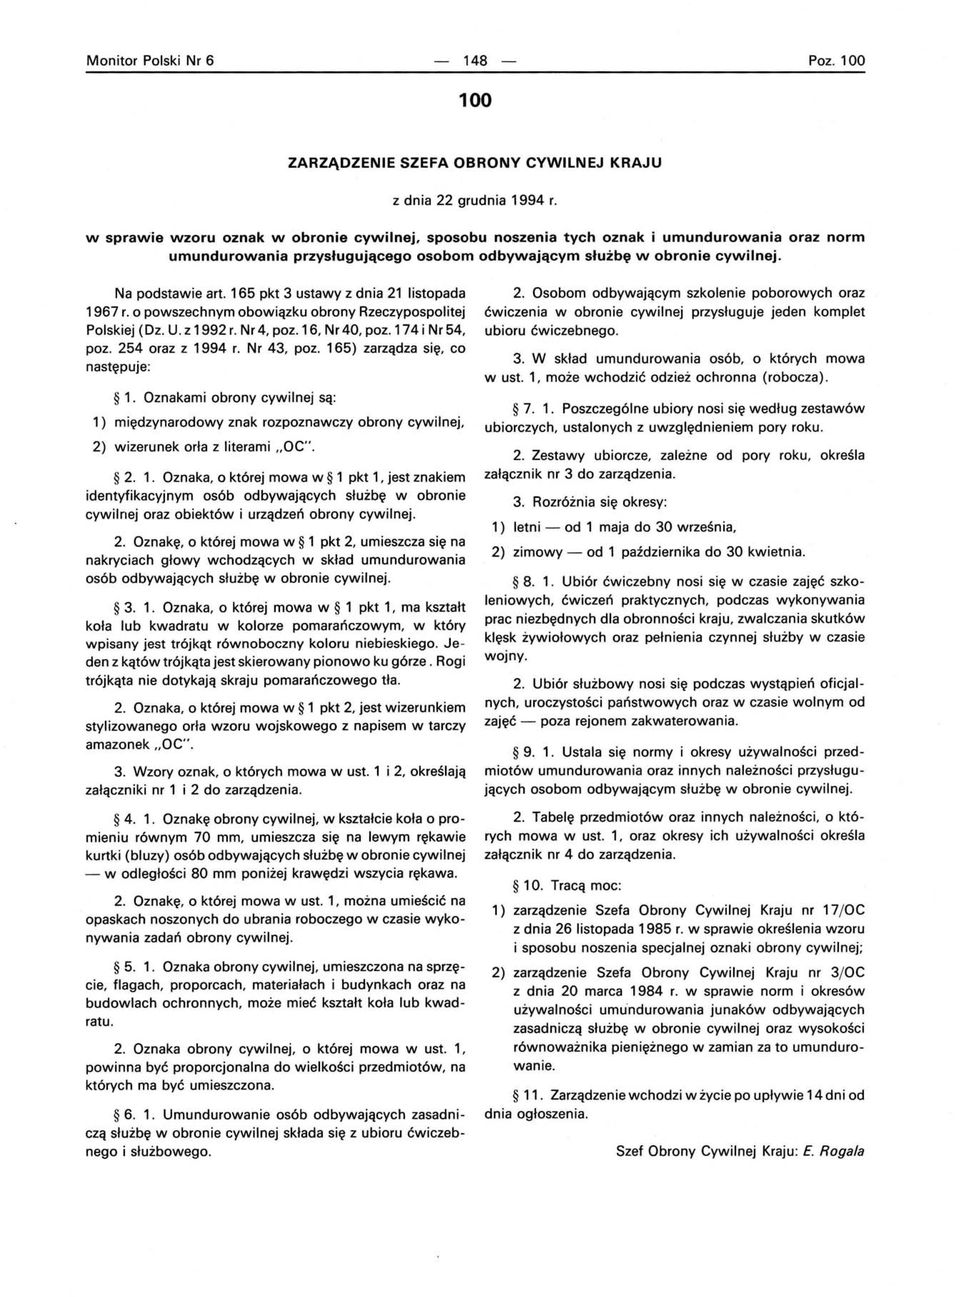 165 pkt 3 ustawy z dnia 21 listopada 1967 r. o powszechnym obowiązku obrony Rzeczypospolitej Polskiej (Dz. U. z 1992 r. Nr 4, poz. 16, Nr 40, poz. 174 i Nr 54, poz. 254 oraz z 1994 r. Nr 43, poz.